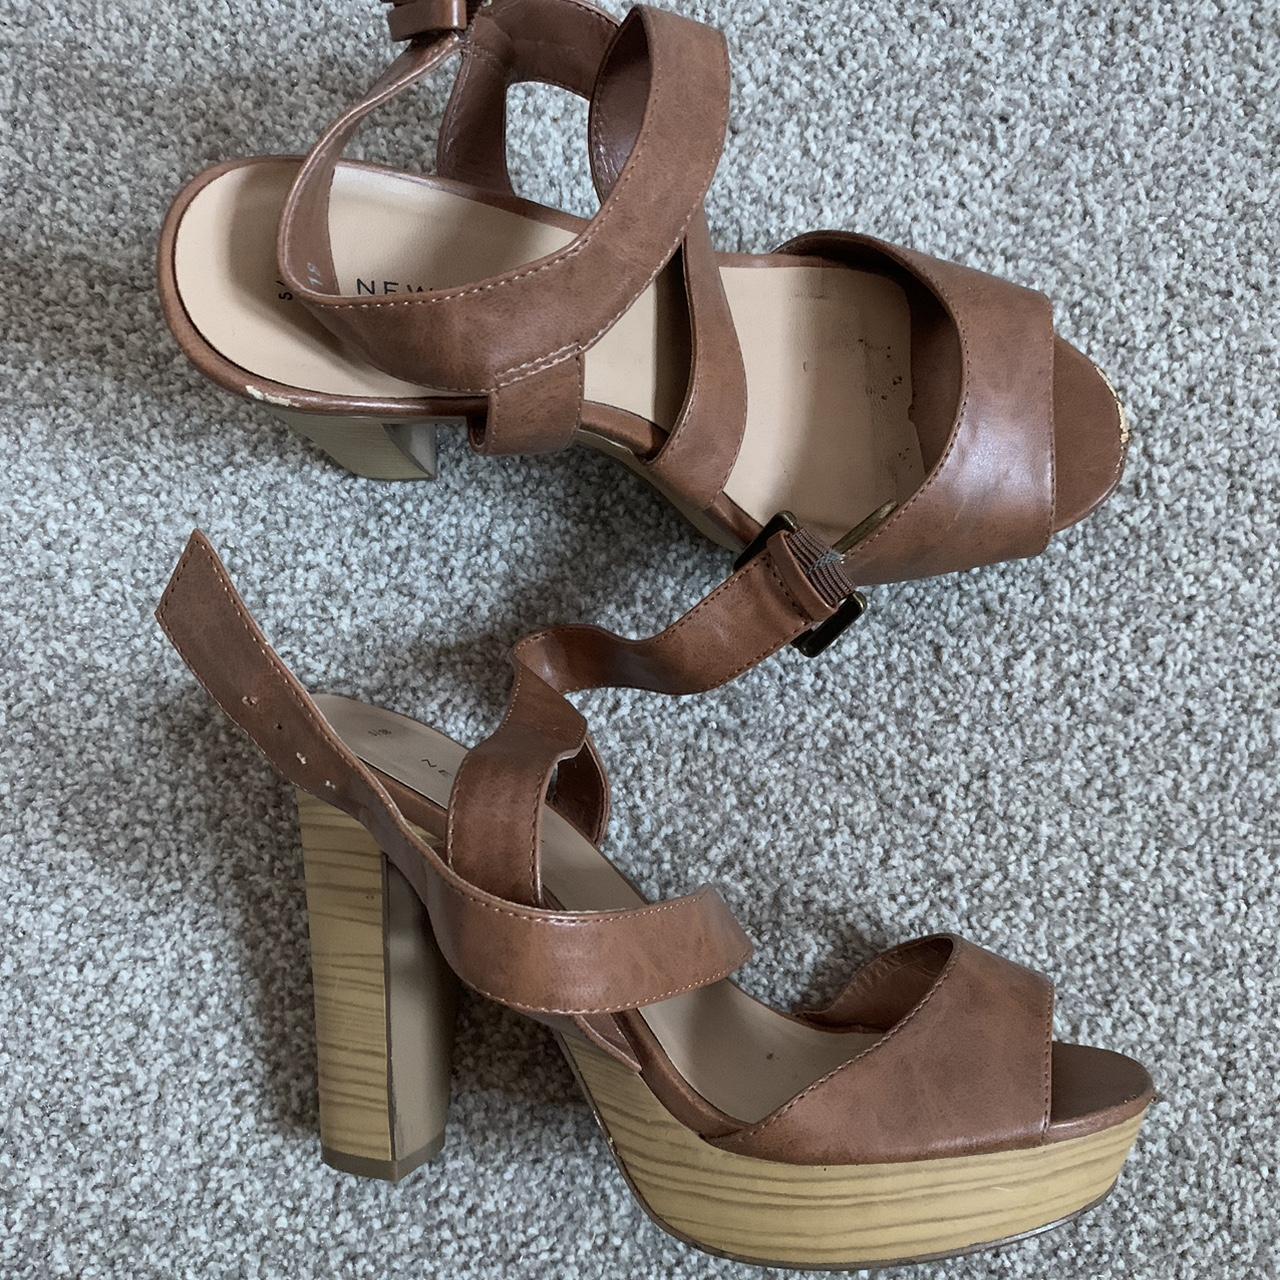 New Look Women's Brown Sandals | Depop